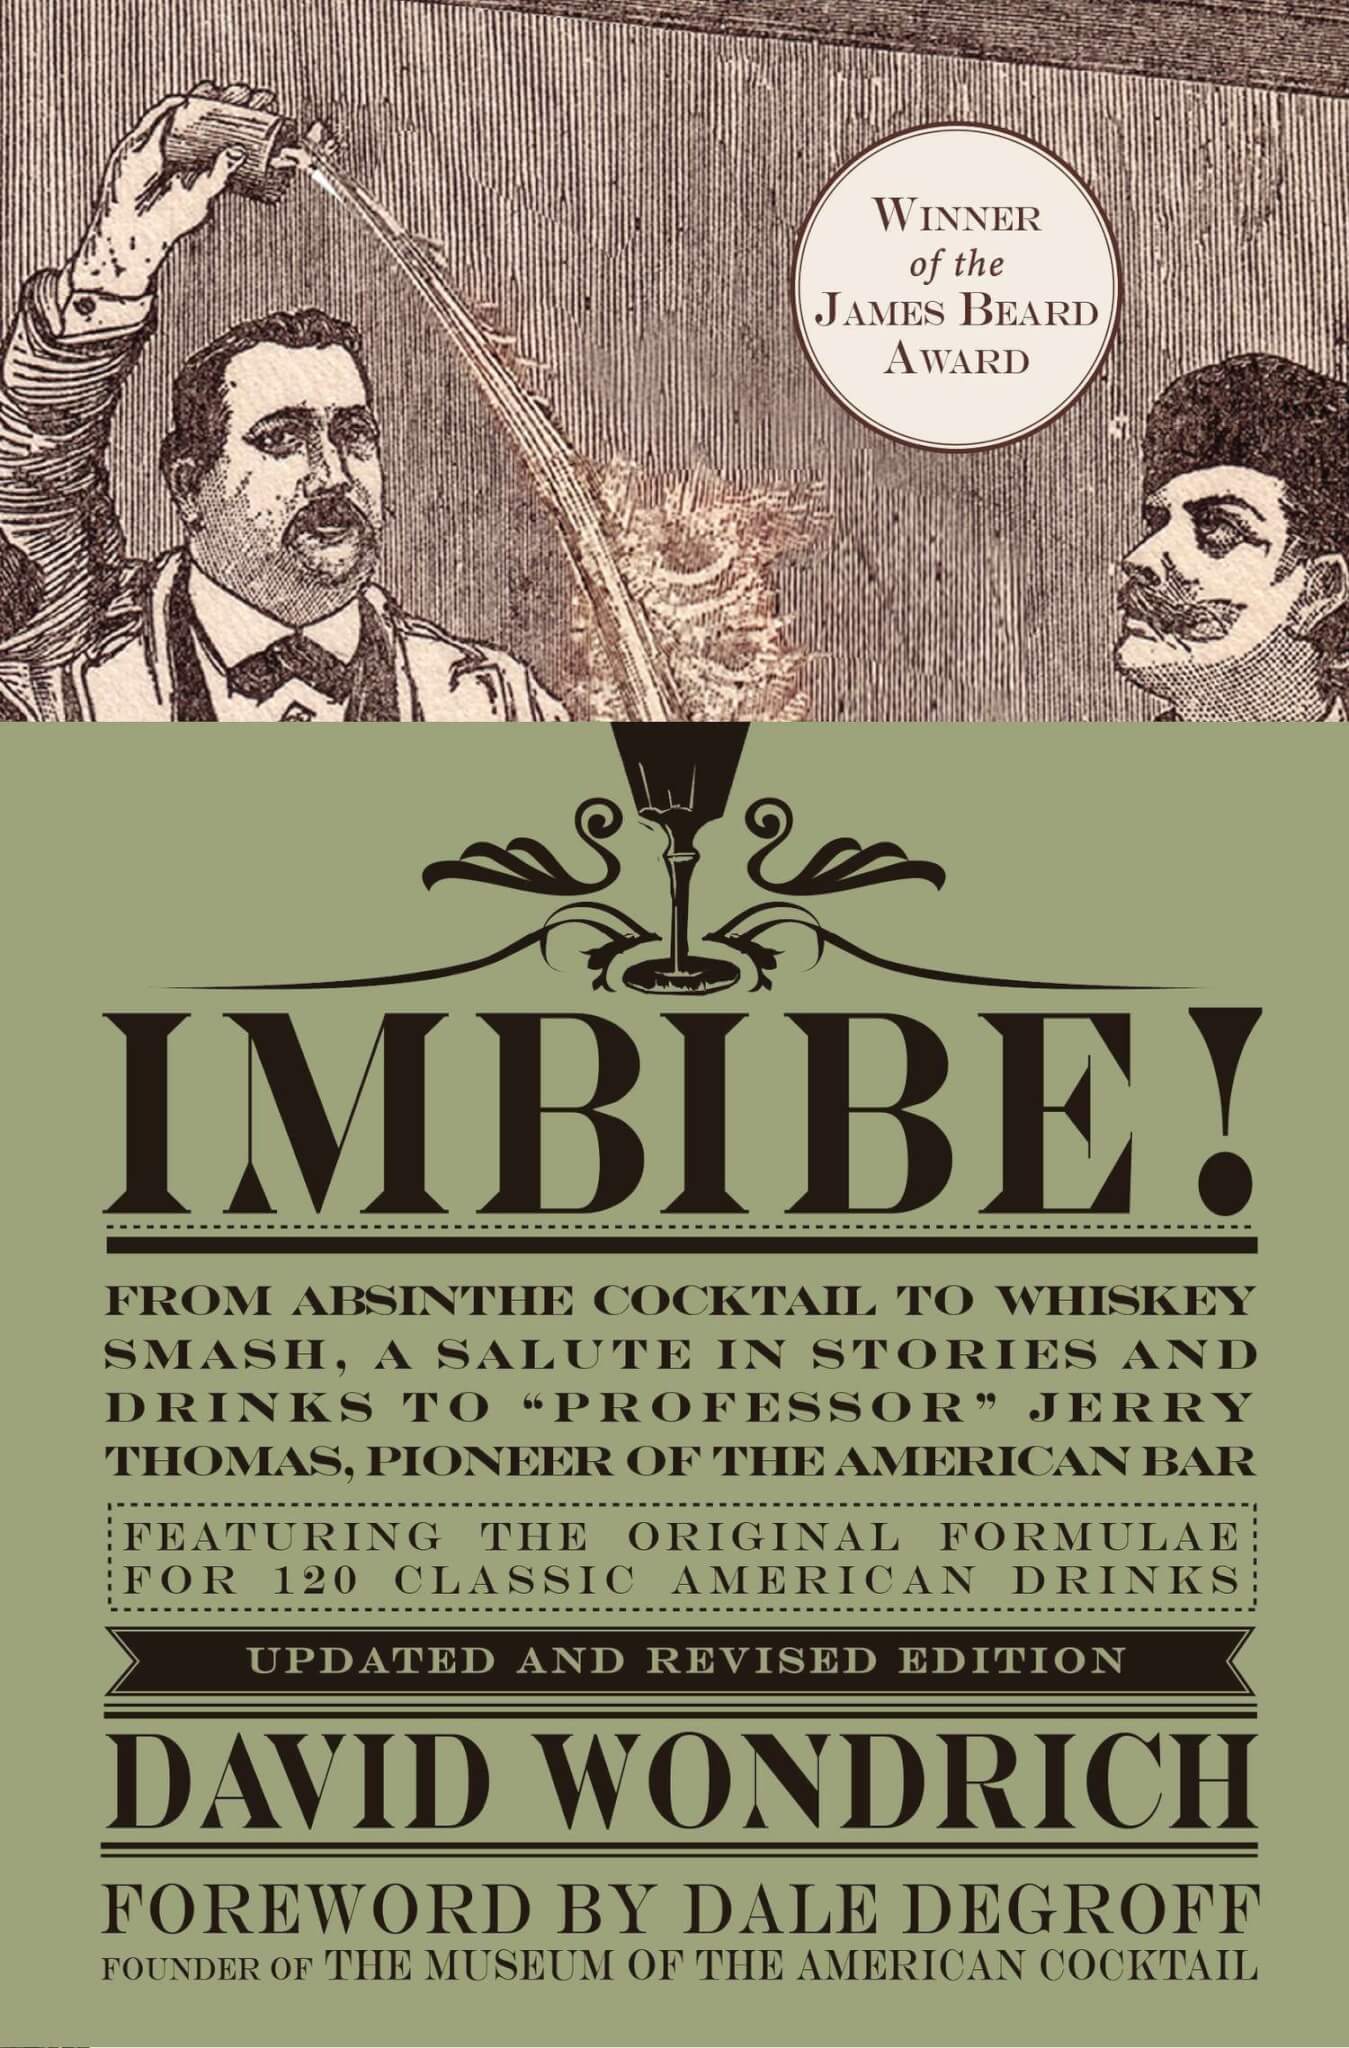 "Imbibe!" by David Wondrich